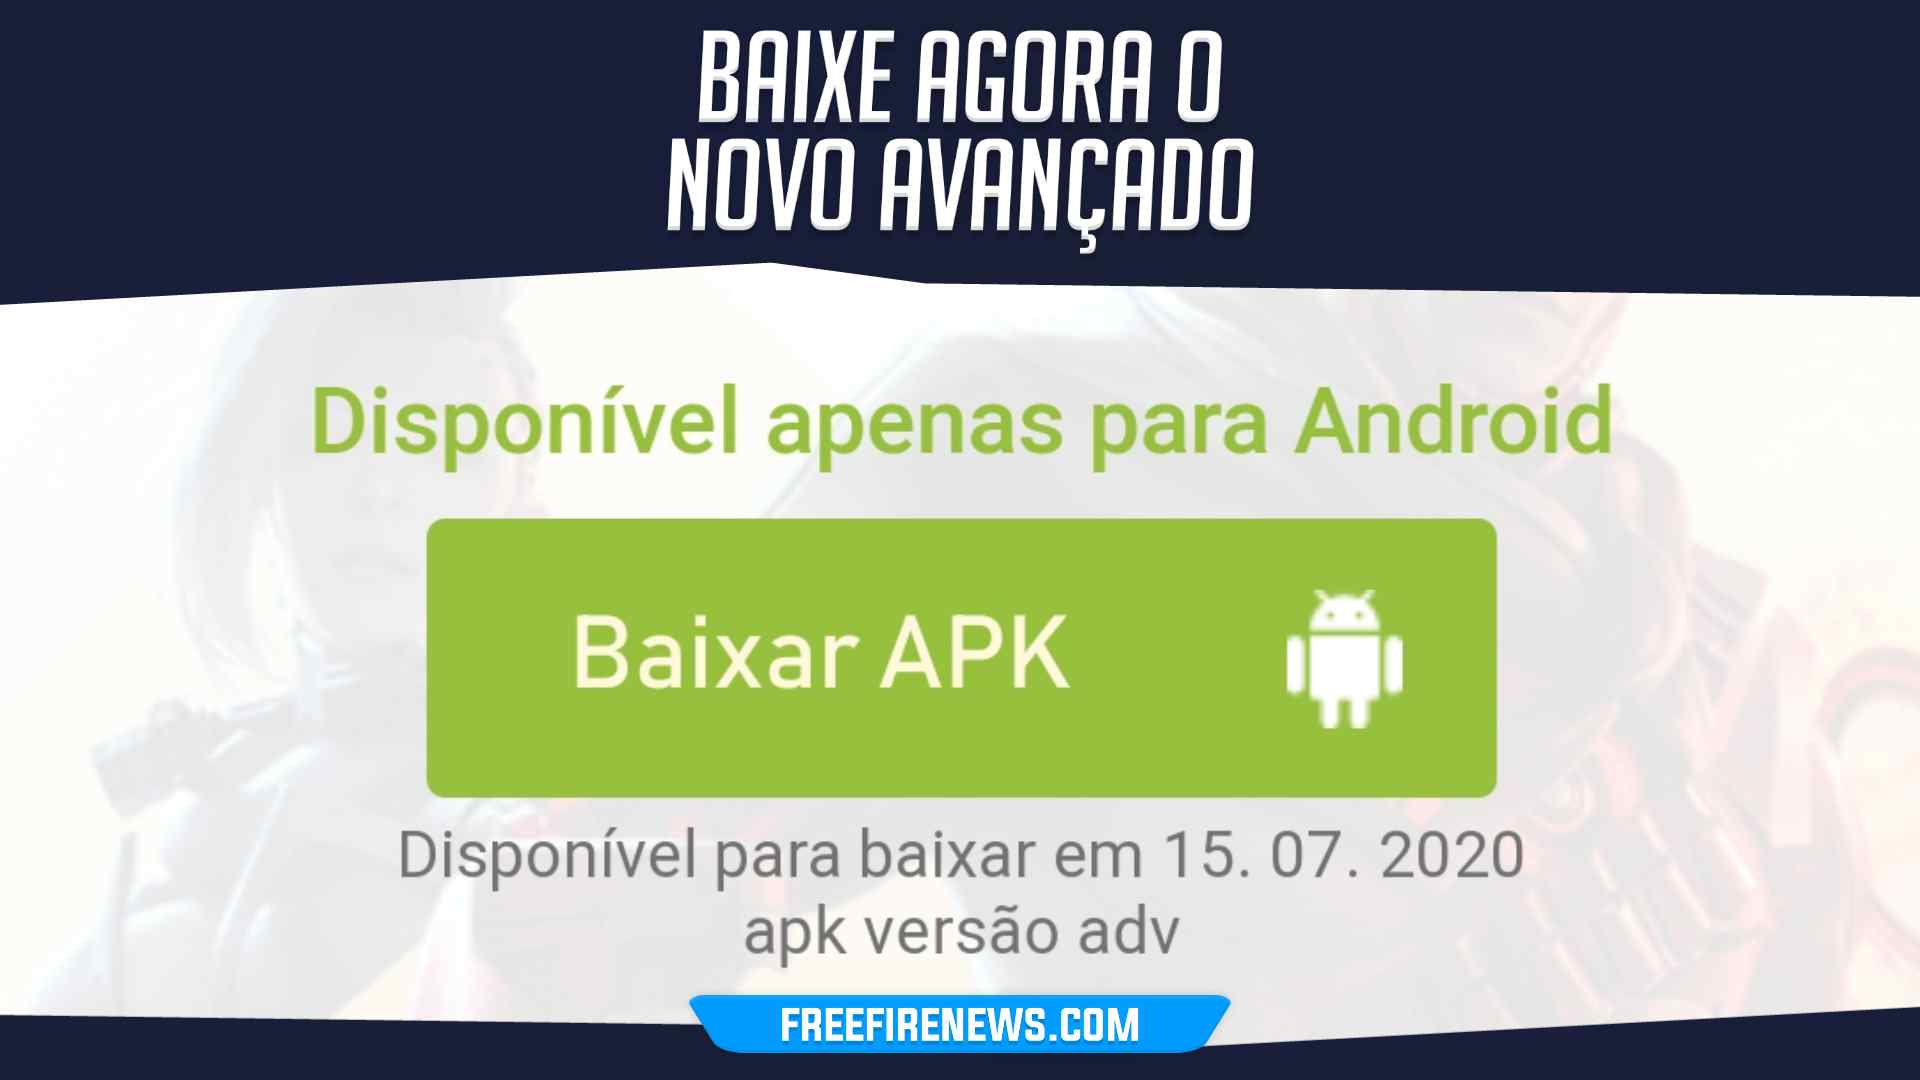 Baixar Servidor Avançado do Free Fire 66.2.0 Grátis - APK Para Android